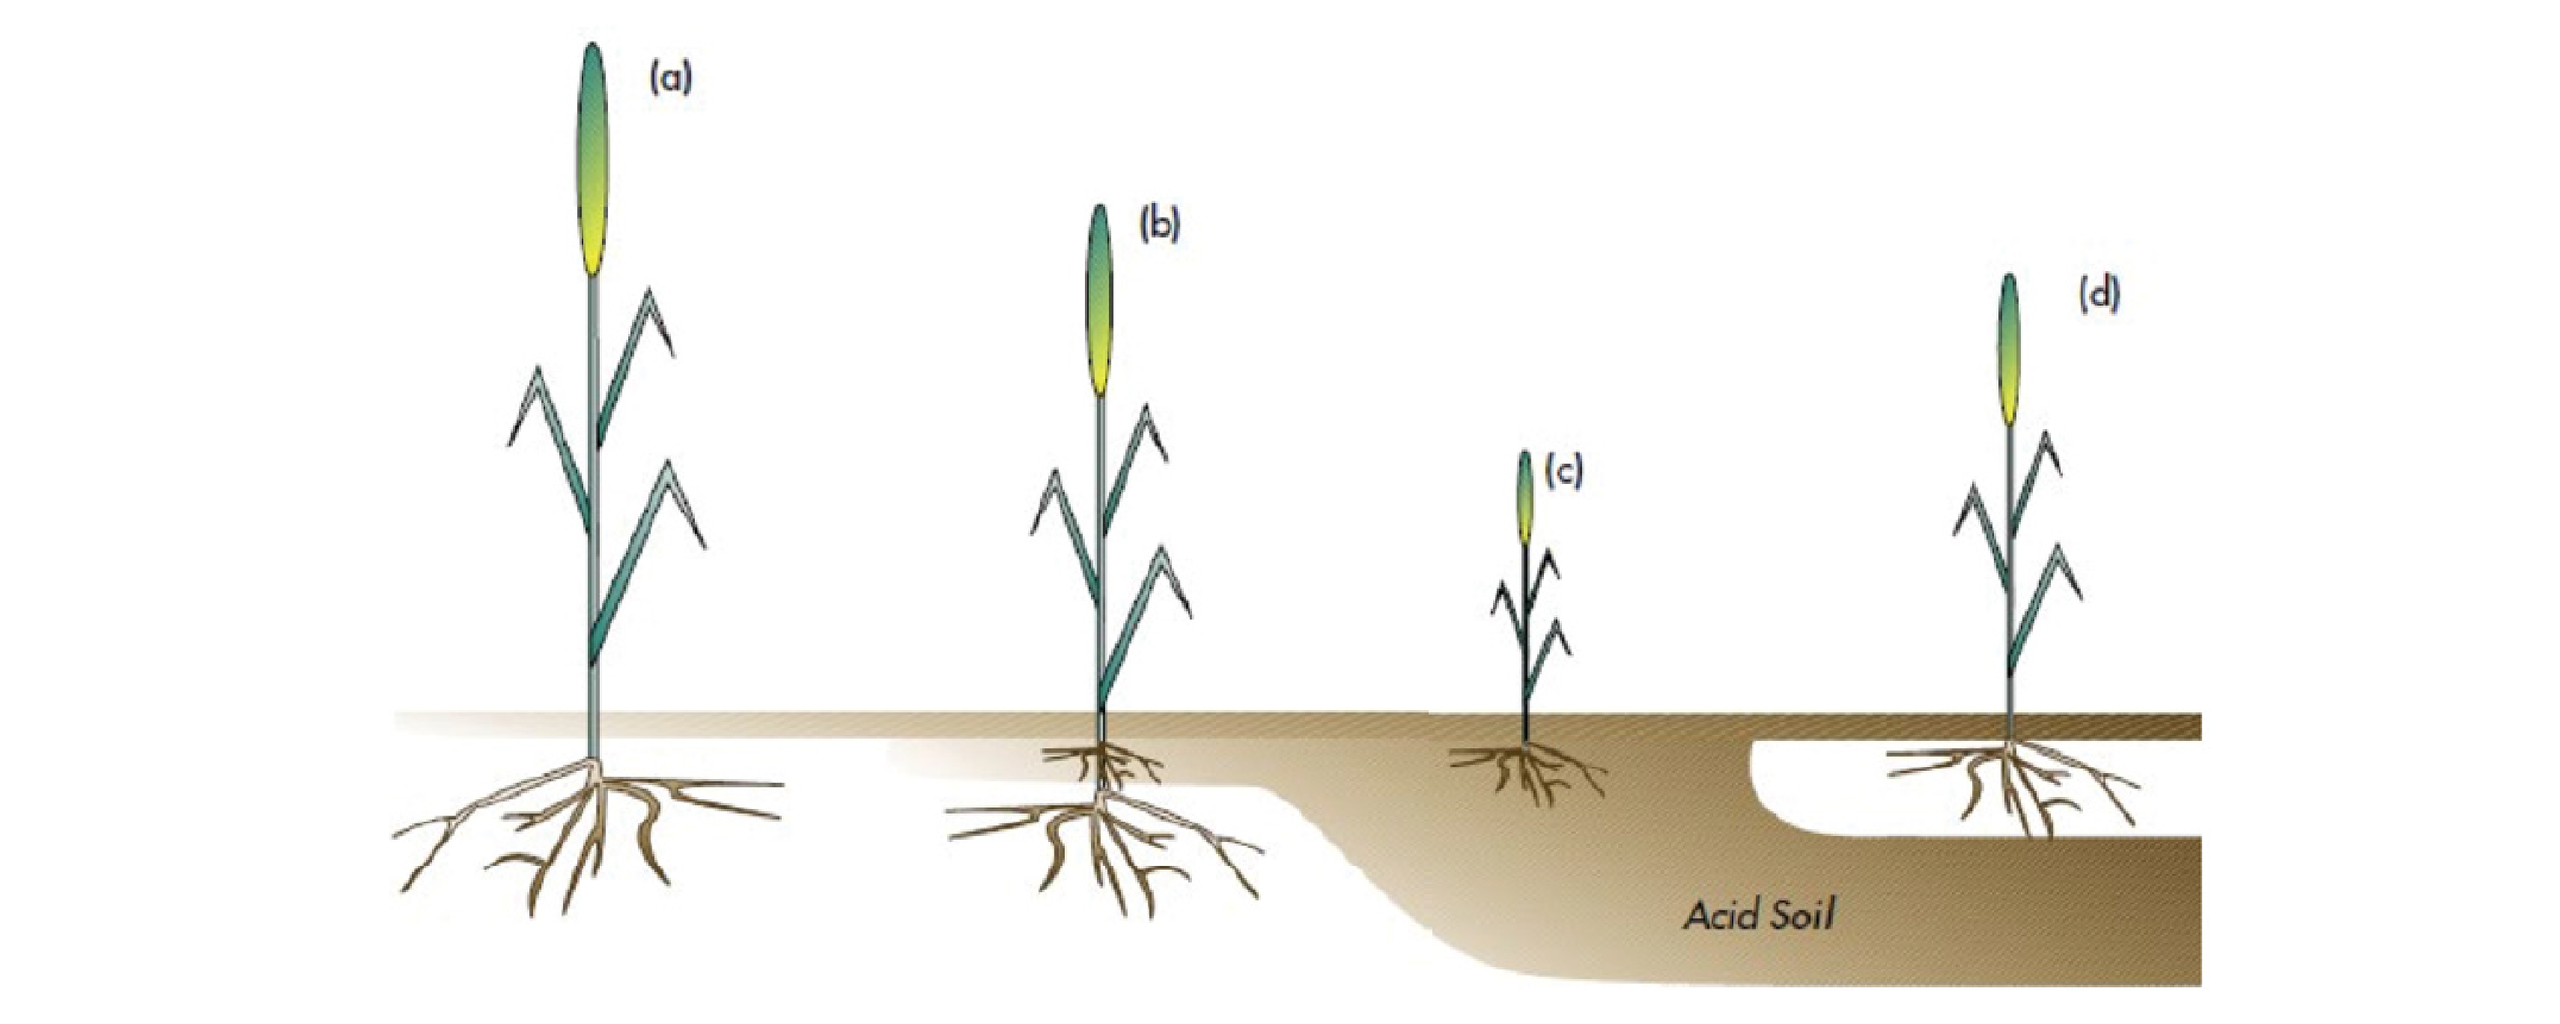 Figure A1-1: Plant vigour in (a) non-acid soil (b) surface acidity (c) acidity (d) sub-soil acidity (33)